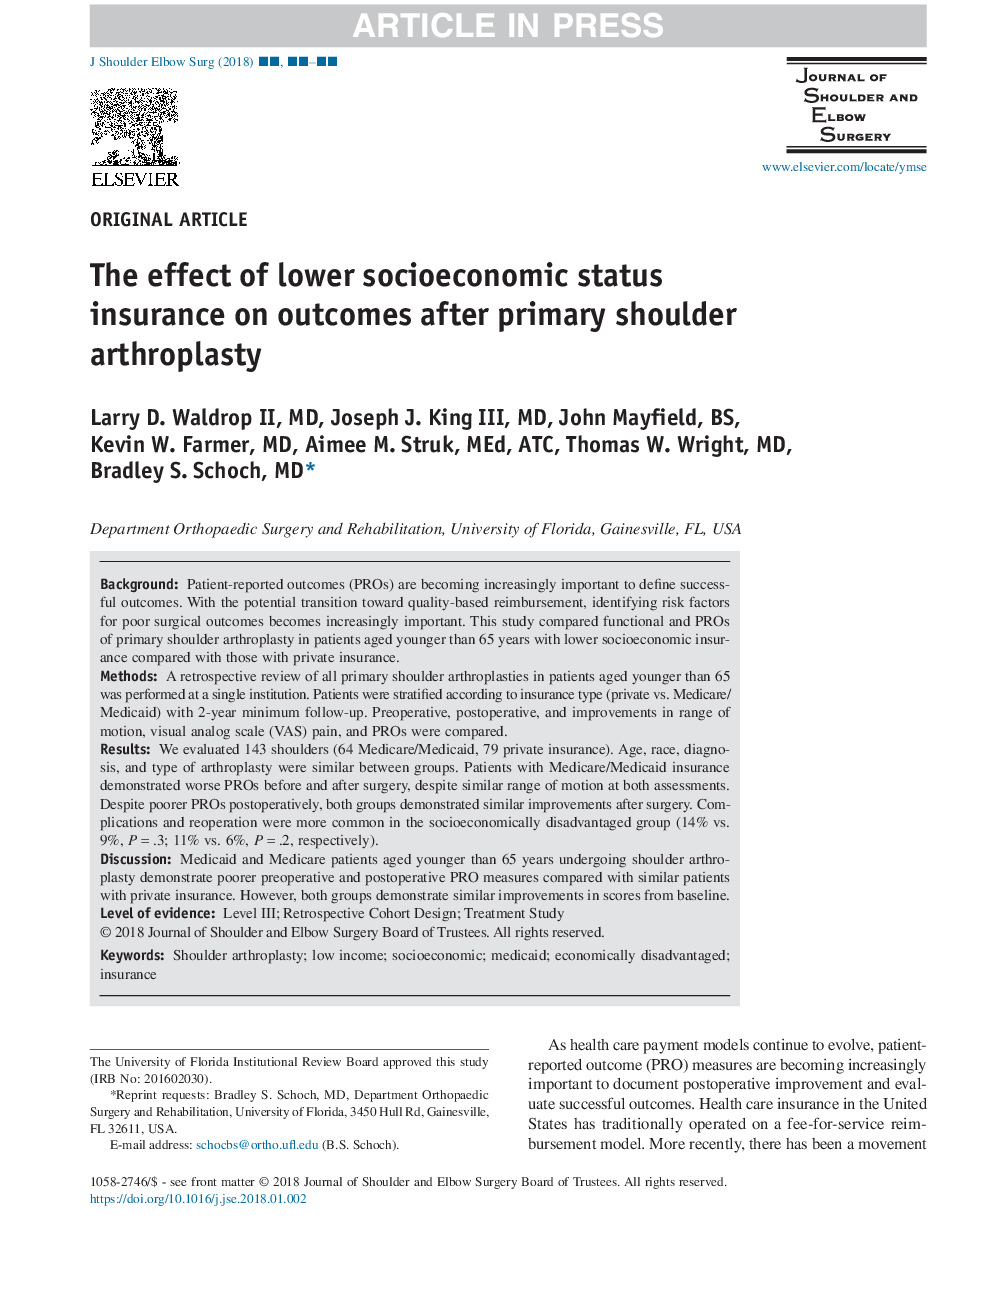 تأثیر بیمه وضعیت اجتماعی پایین تر بر نتایج بعد از آرتروپلاستی شانه اولیه 